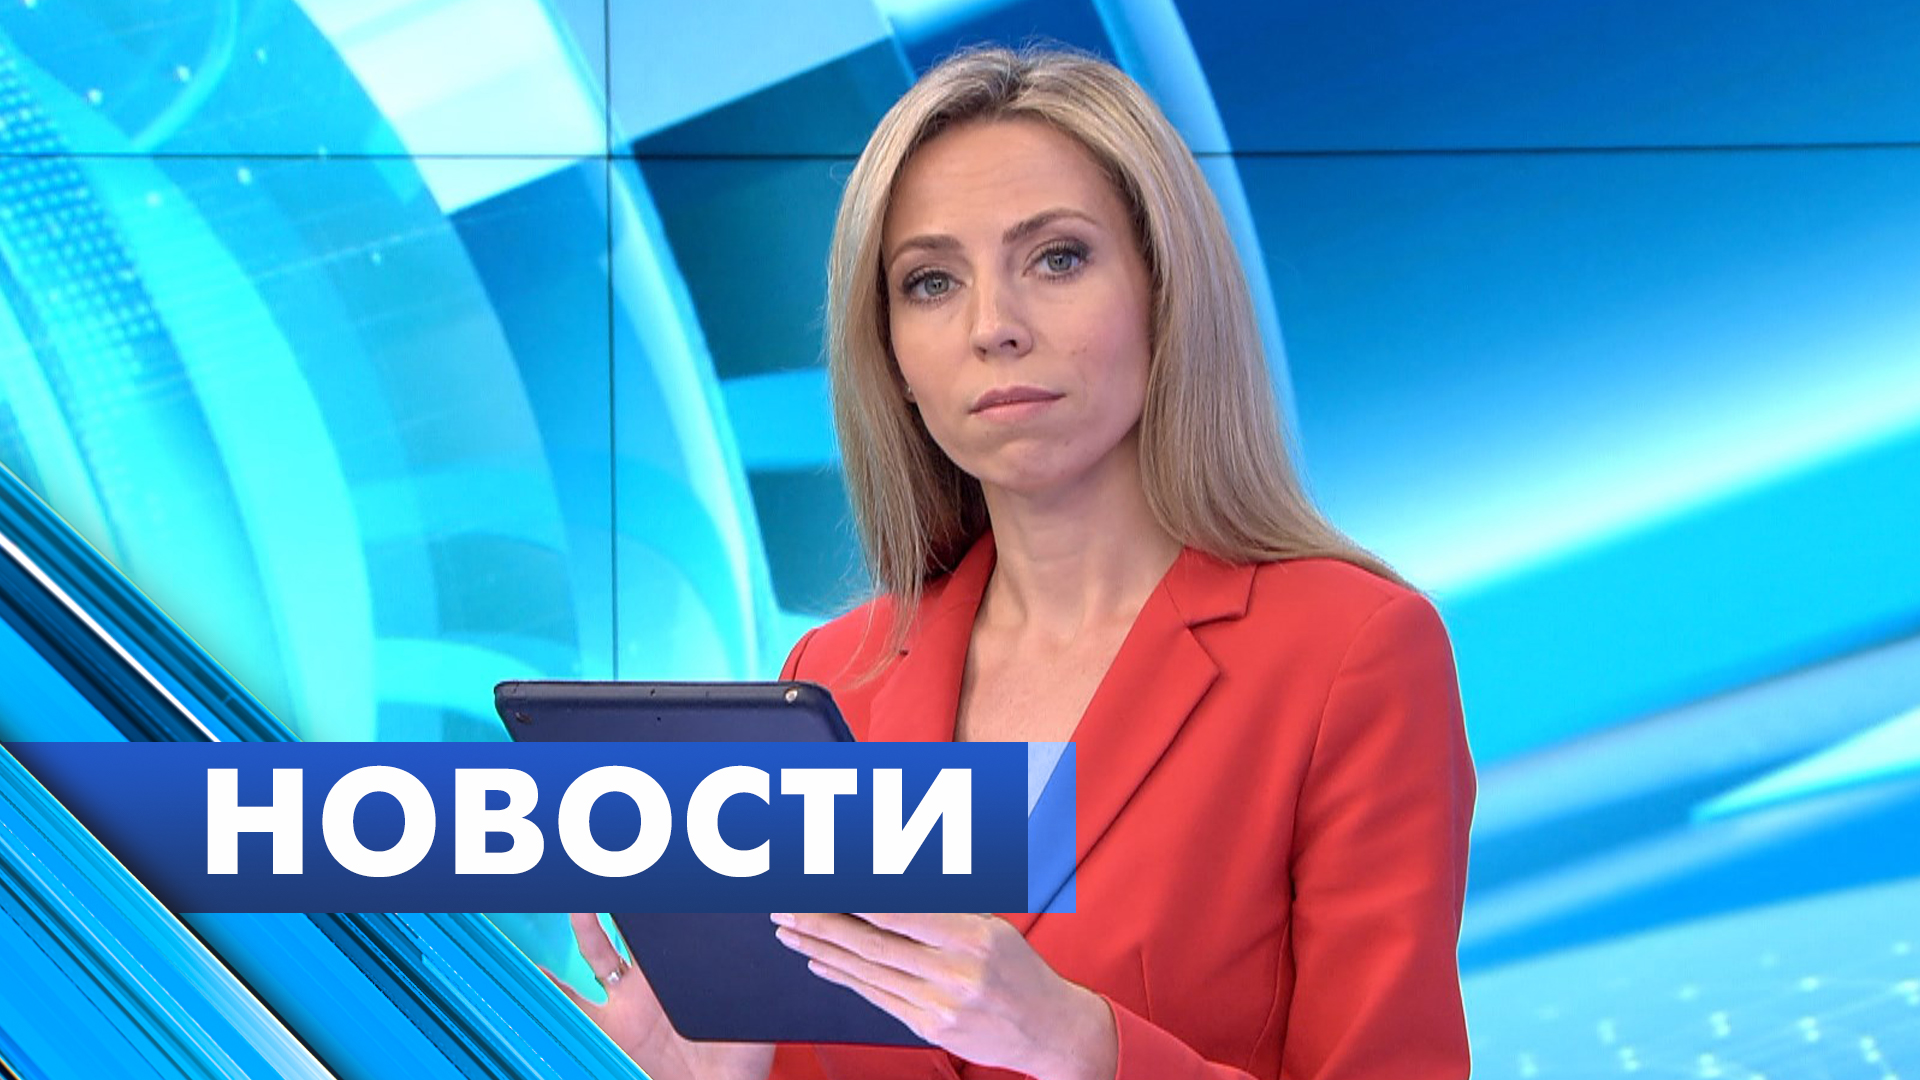 Главные новости Петербурга / 4 июня